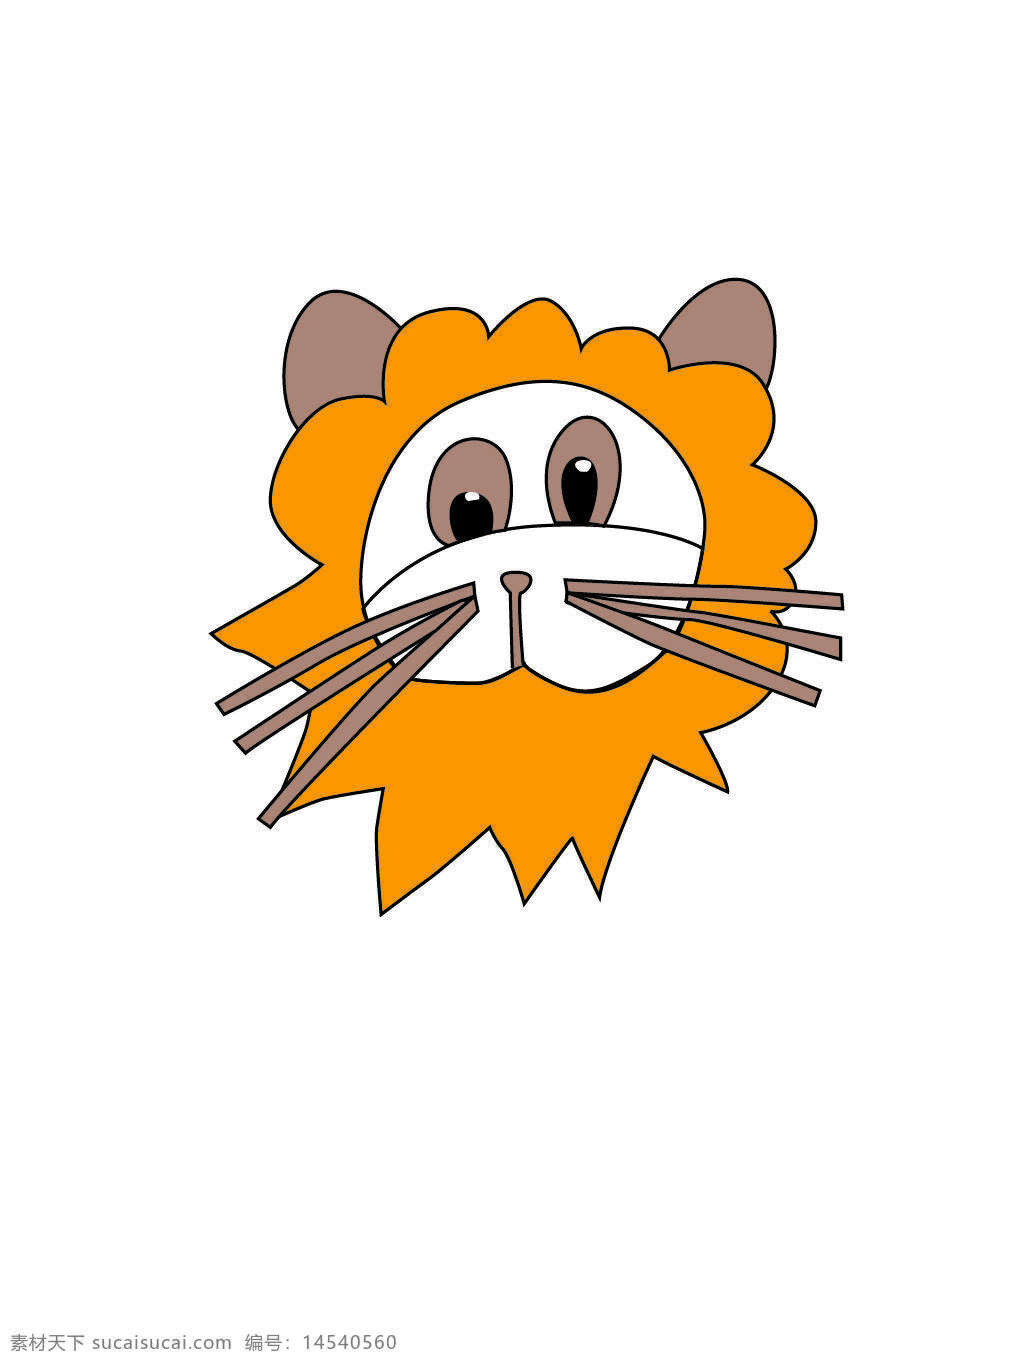 狮子 简笔画 懵懂 卡通 动物